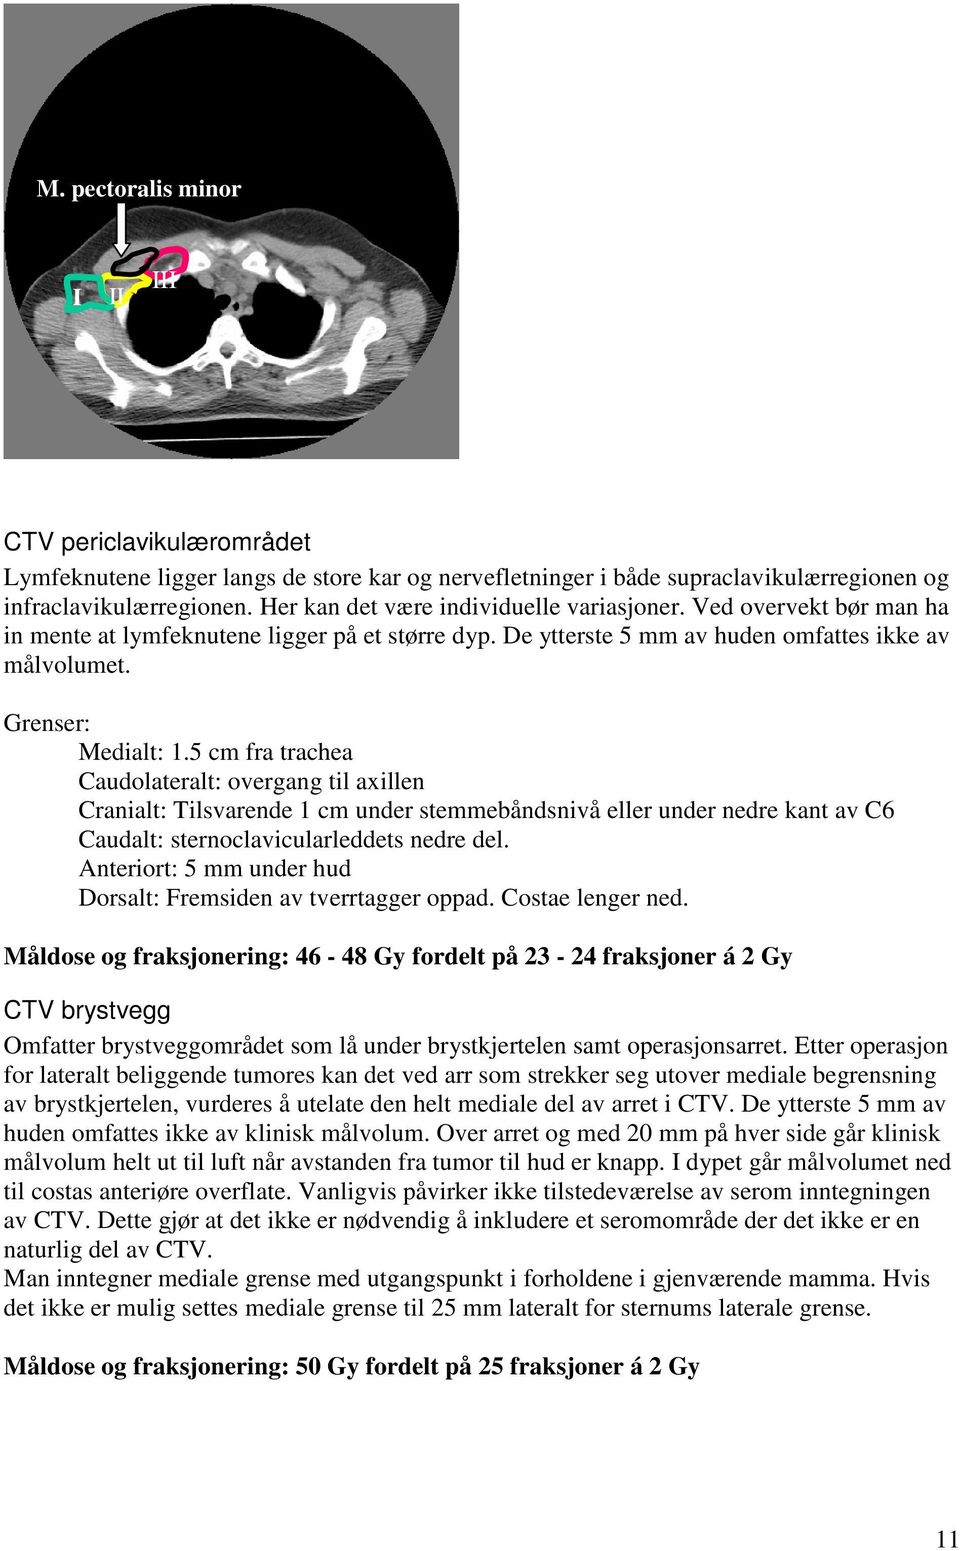 5 cm fra trachea Caudolateralt: overgang til axillen Cranialt: Tilsvarende 1 cm under stemmebåndsnivå eller under nedre kant av C6 Caudalt: sternoclavicularleddets nedre del.